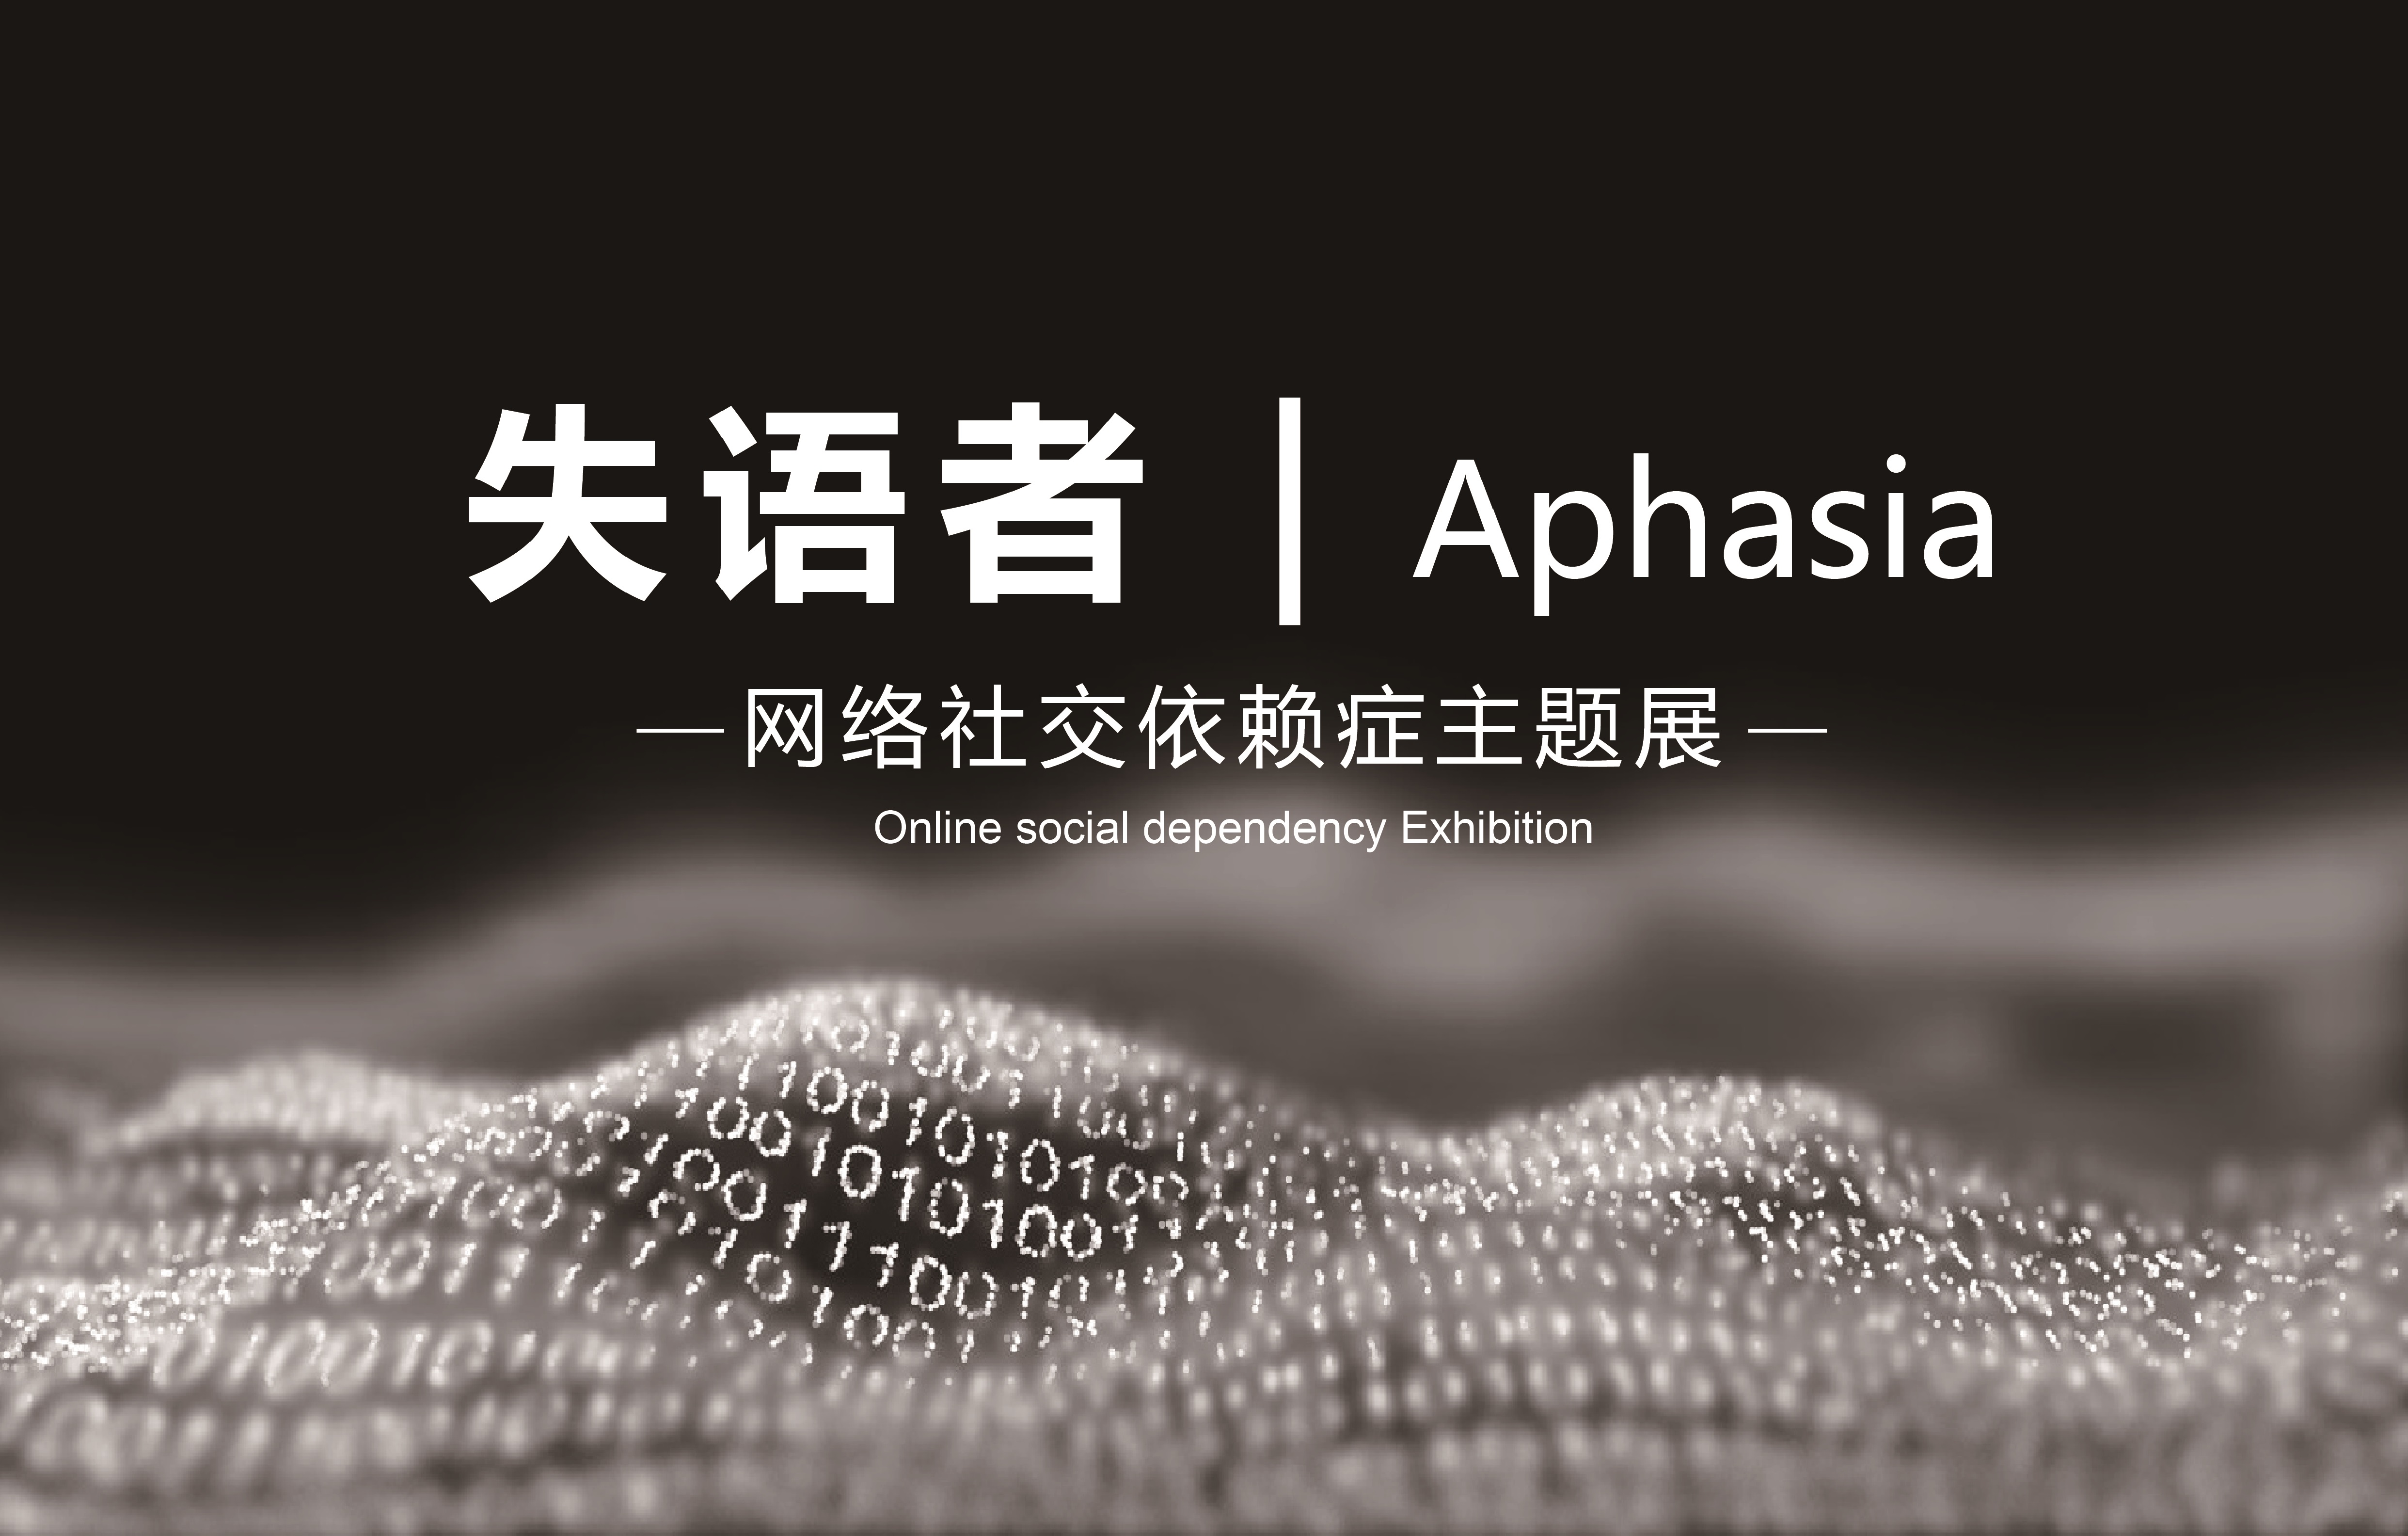 失语者aphasia网络社交依赖症主题展览